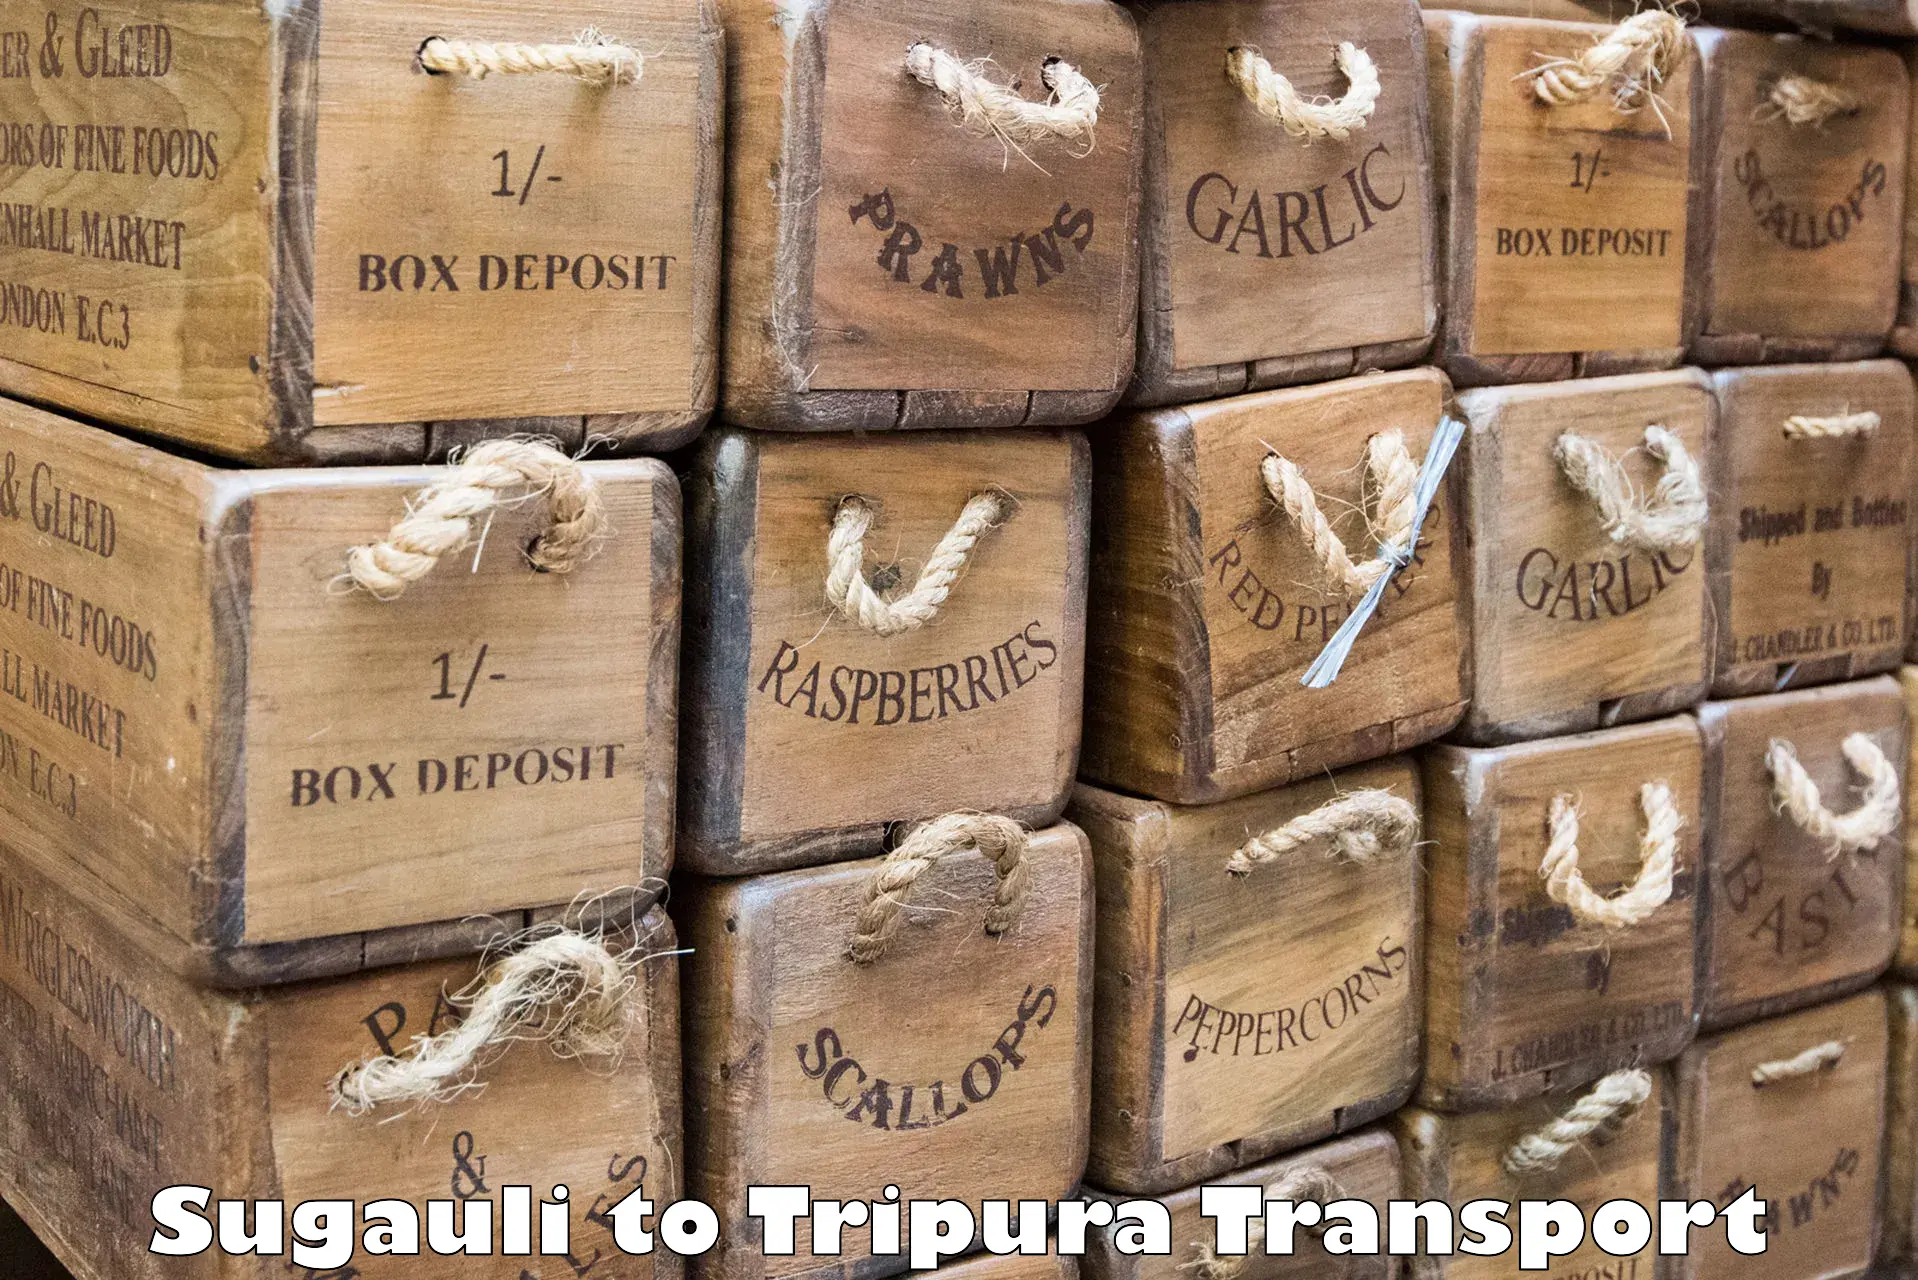 Nearest transport service Sugauli to Tripura